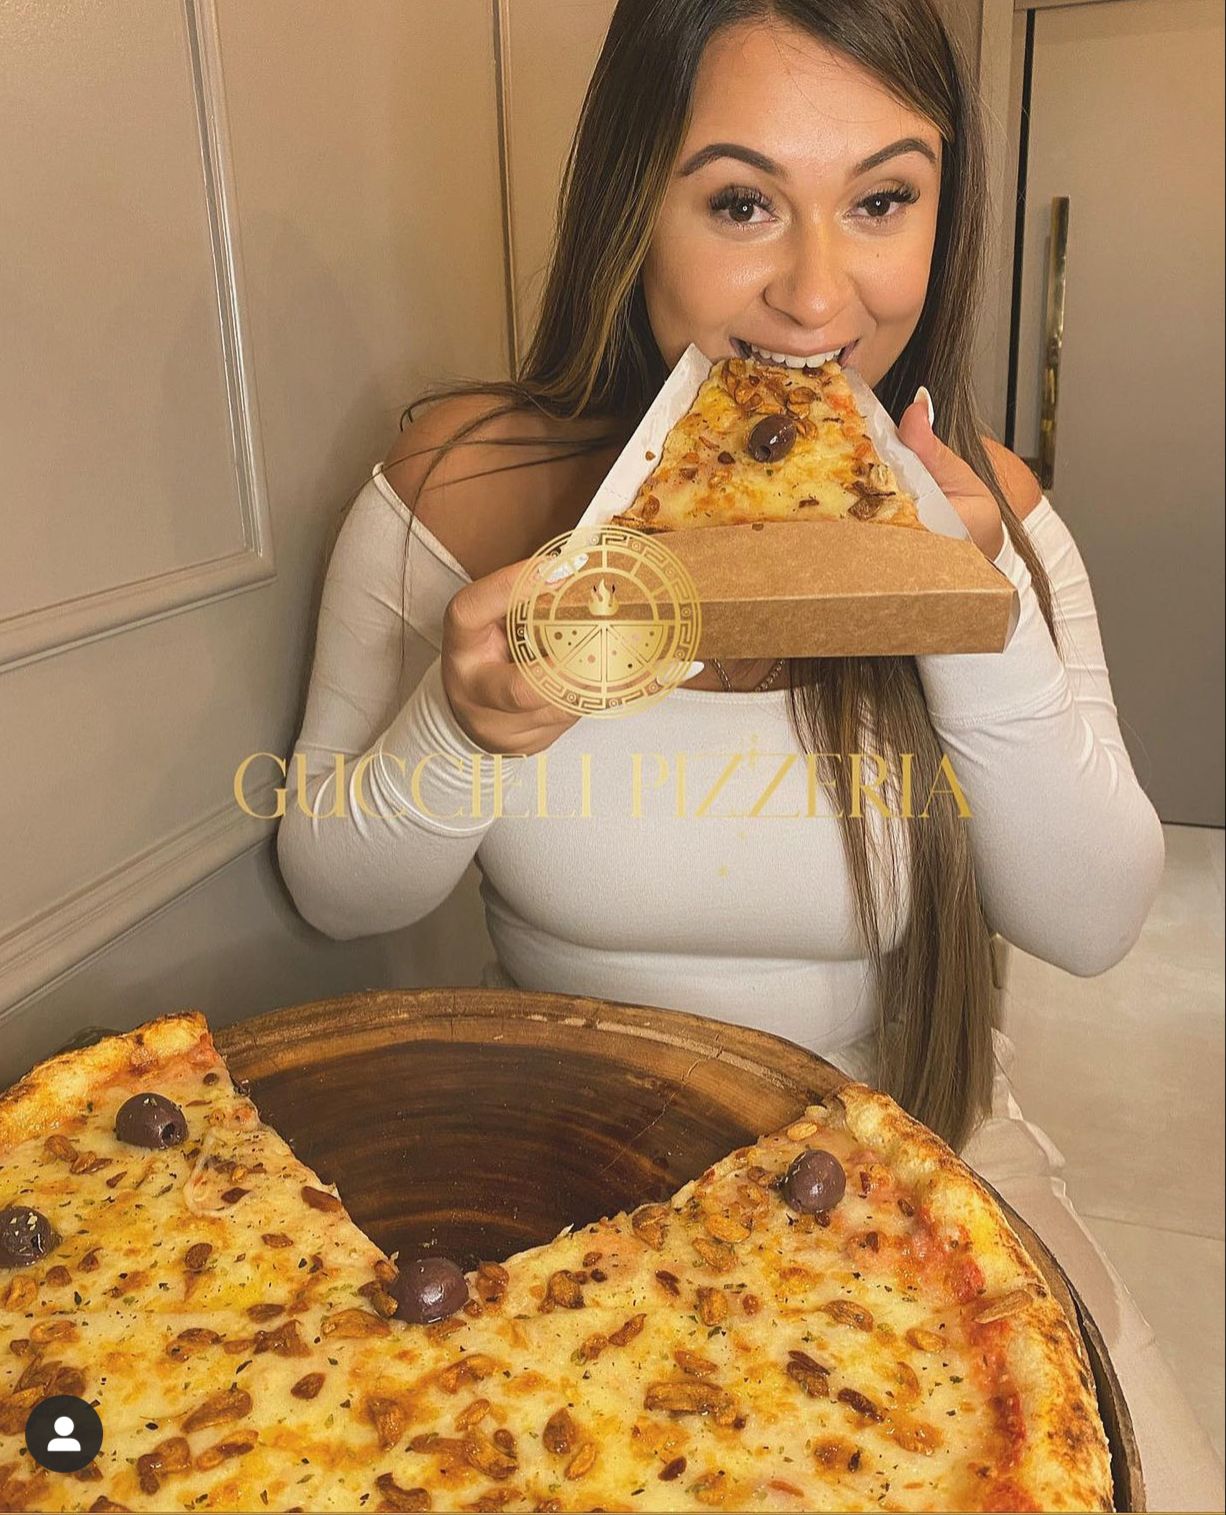 Guccieli Pizzeria lança primeira pizza com 10 pedaços no Tatuapé